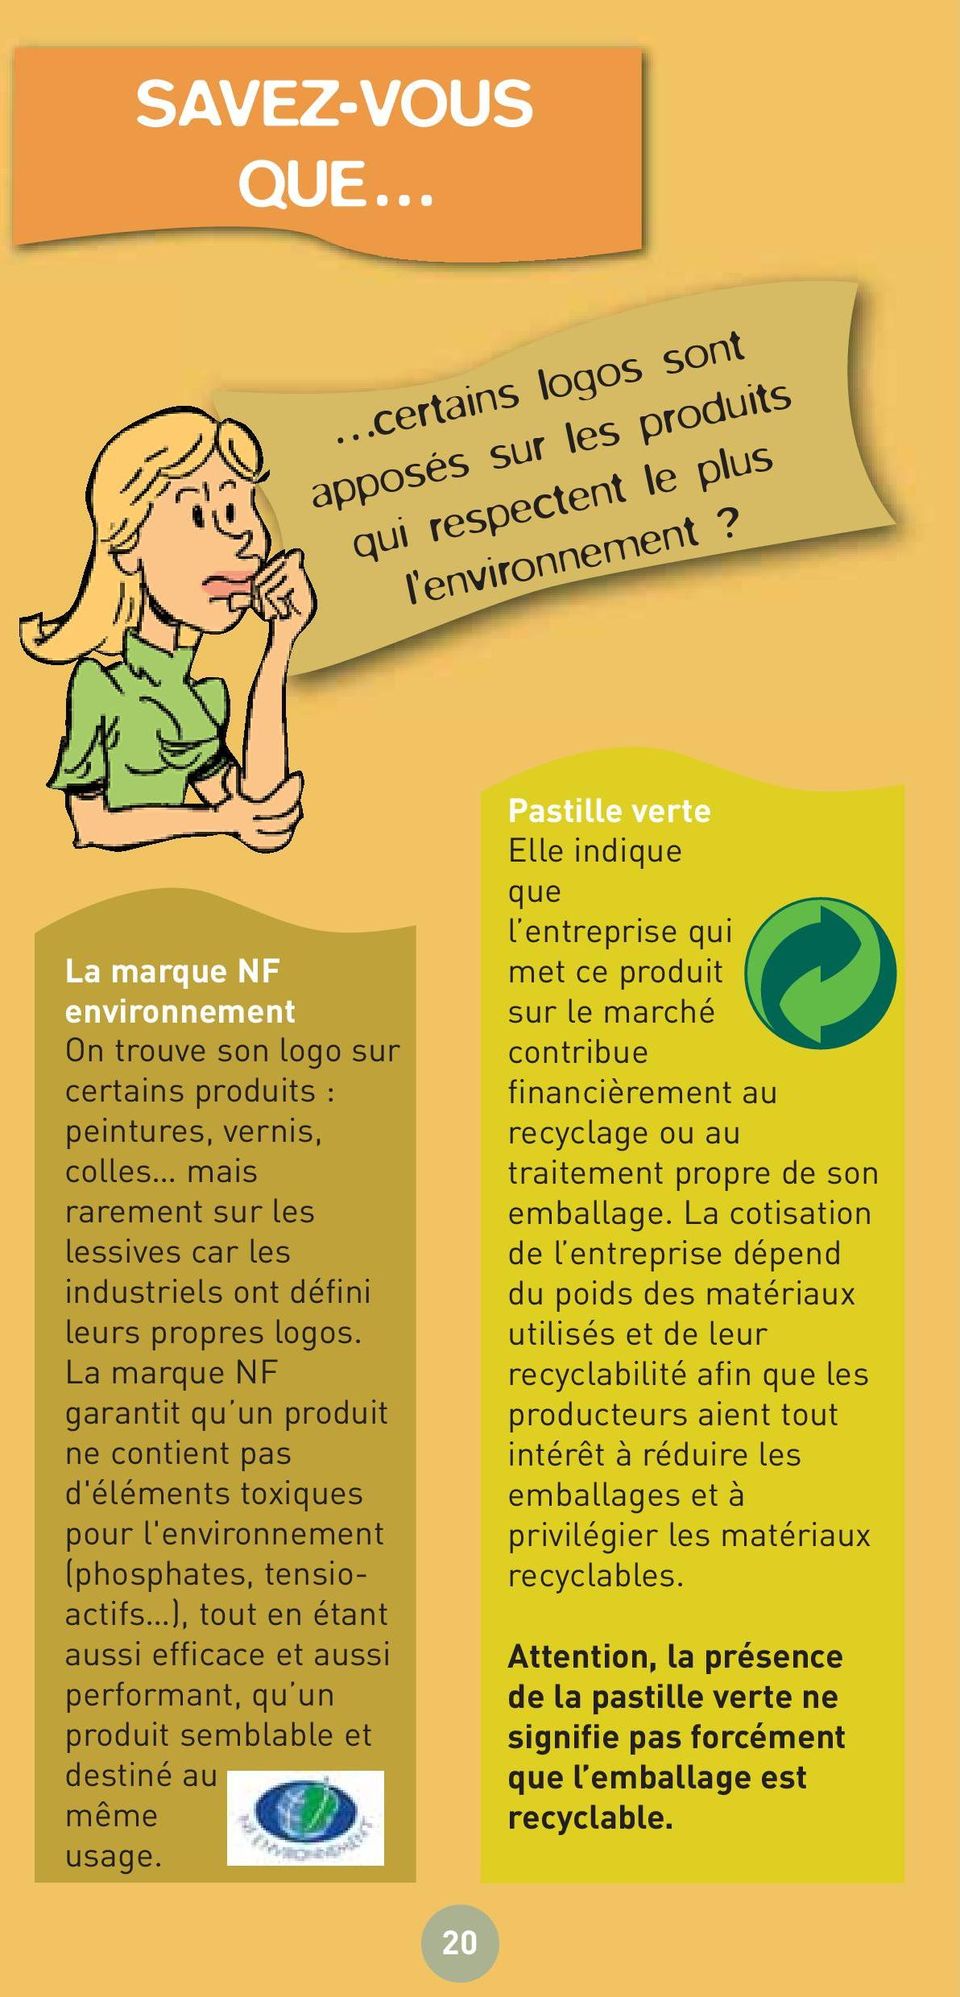 La marque NF garantit qu un produit ne contient pas d'éléments toxiques pour l'environnement (phosphates, tensioactifs ), tout en étant aussi efficace et aussi performant, qu un produit semblable et